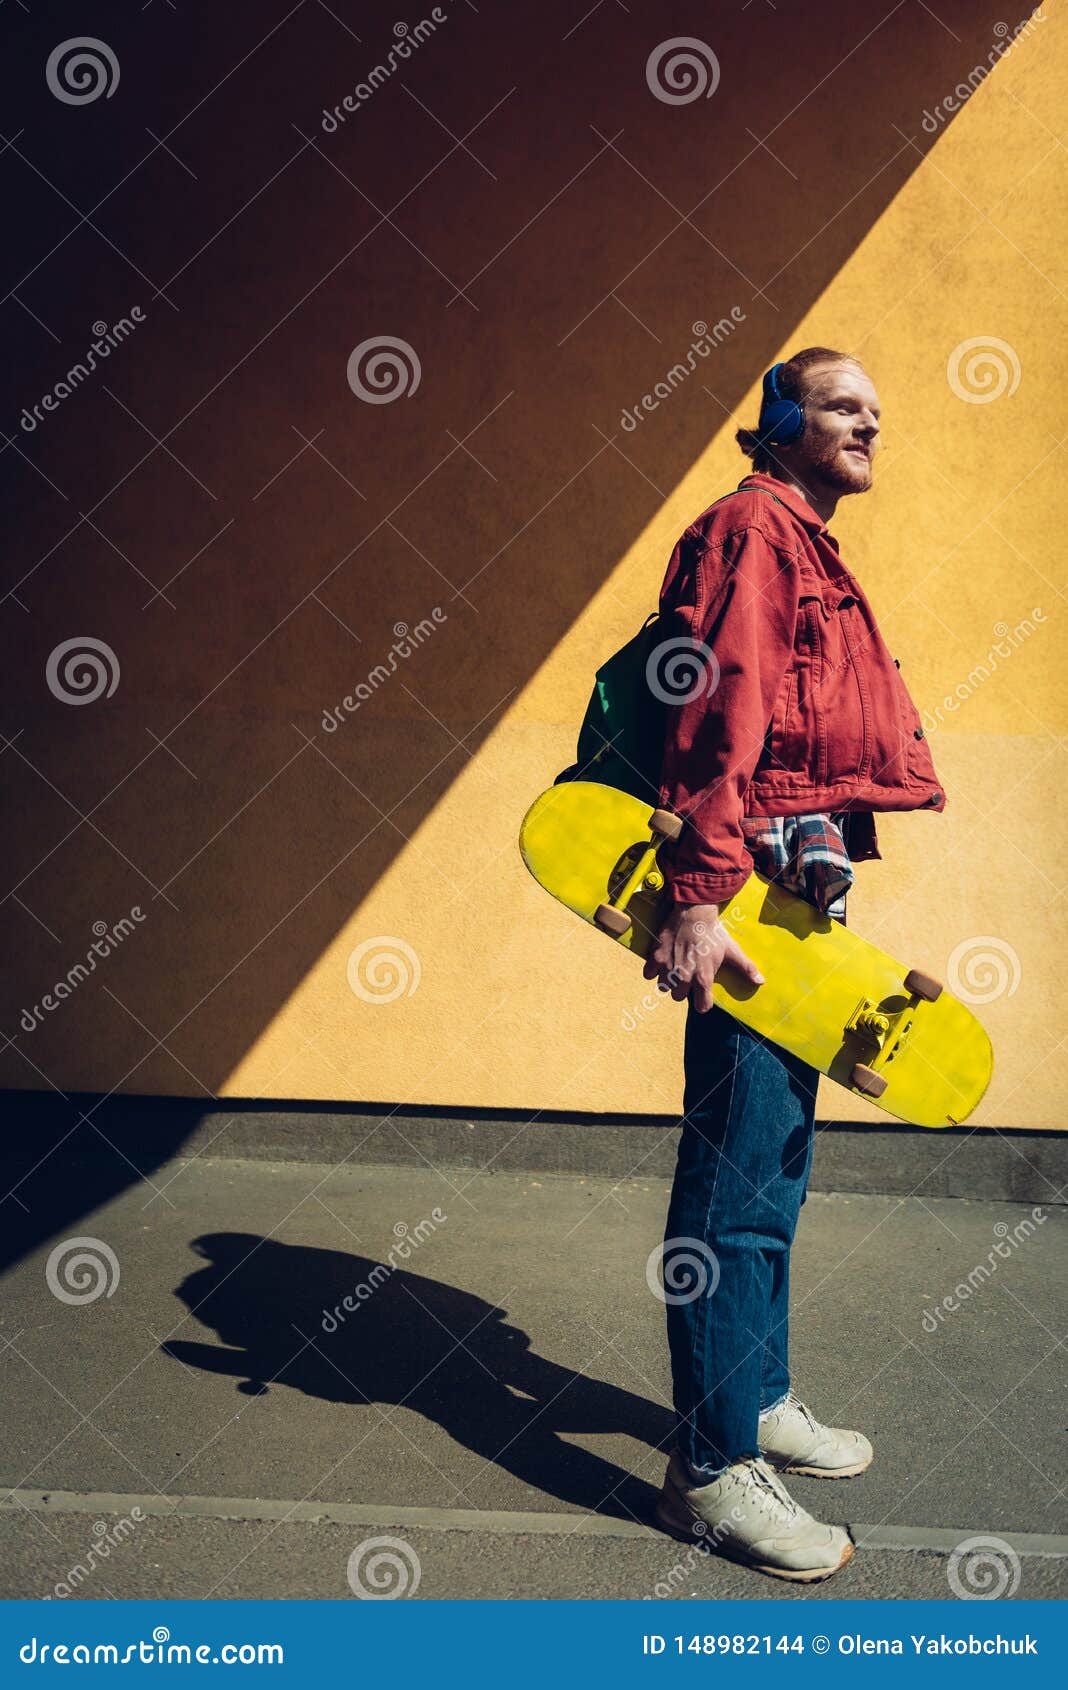 Skater Man Listen To Music Via Headphones Stock Photo - Image of sport ...